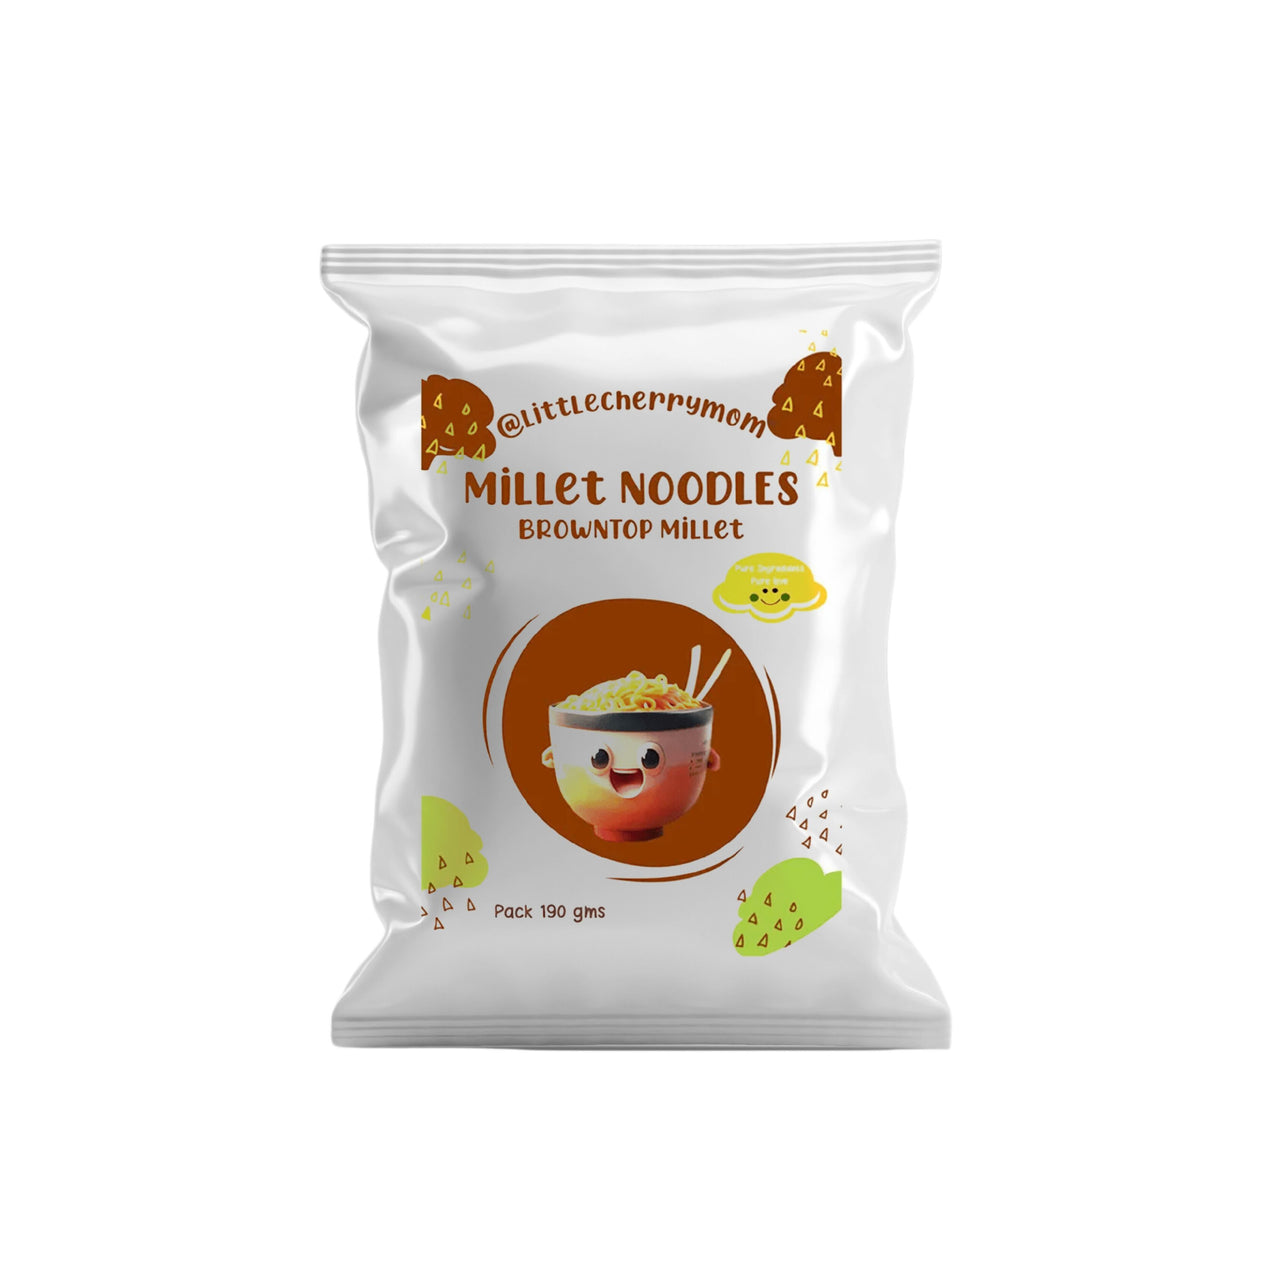 Littlecherrymom Browntop Millet Instant Noodles - Distacart